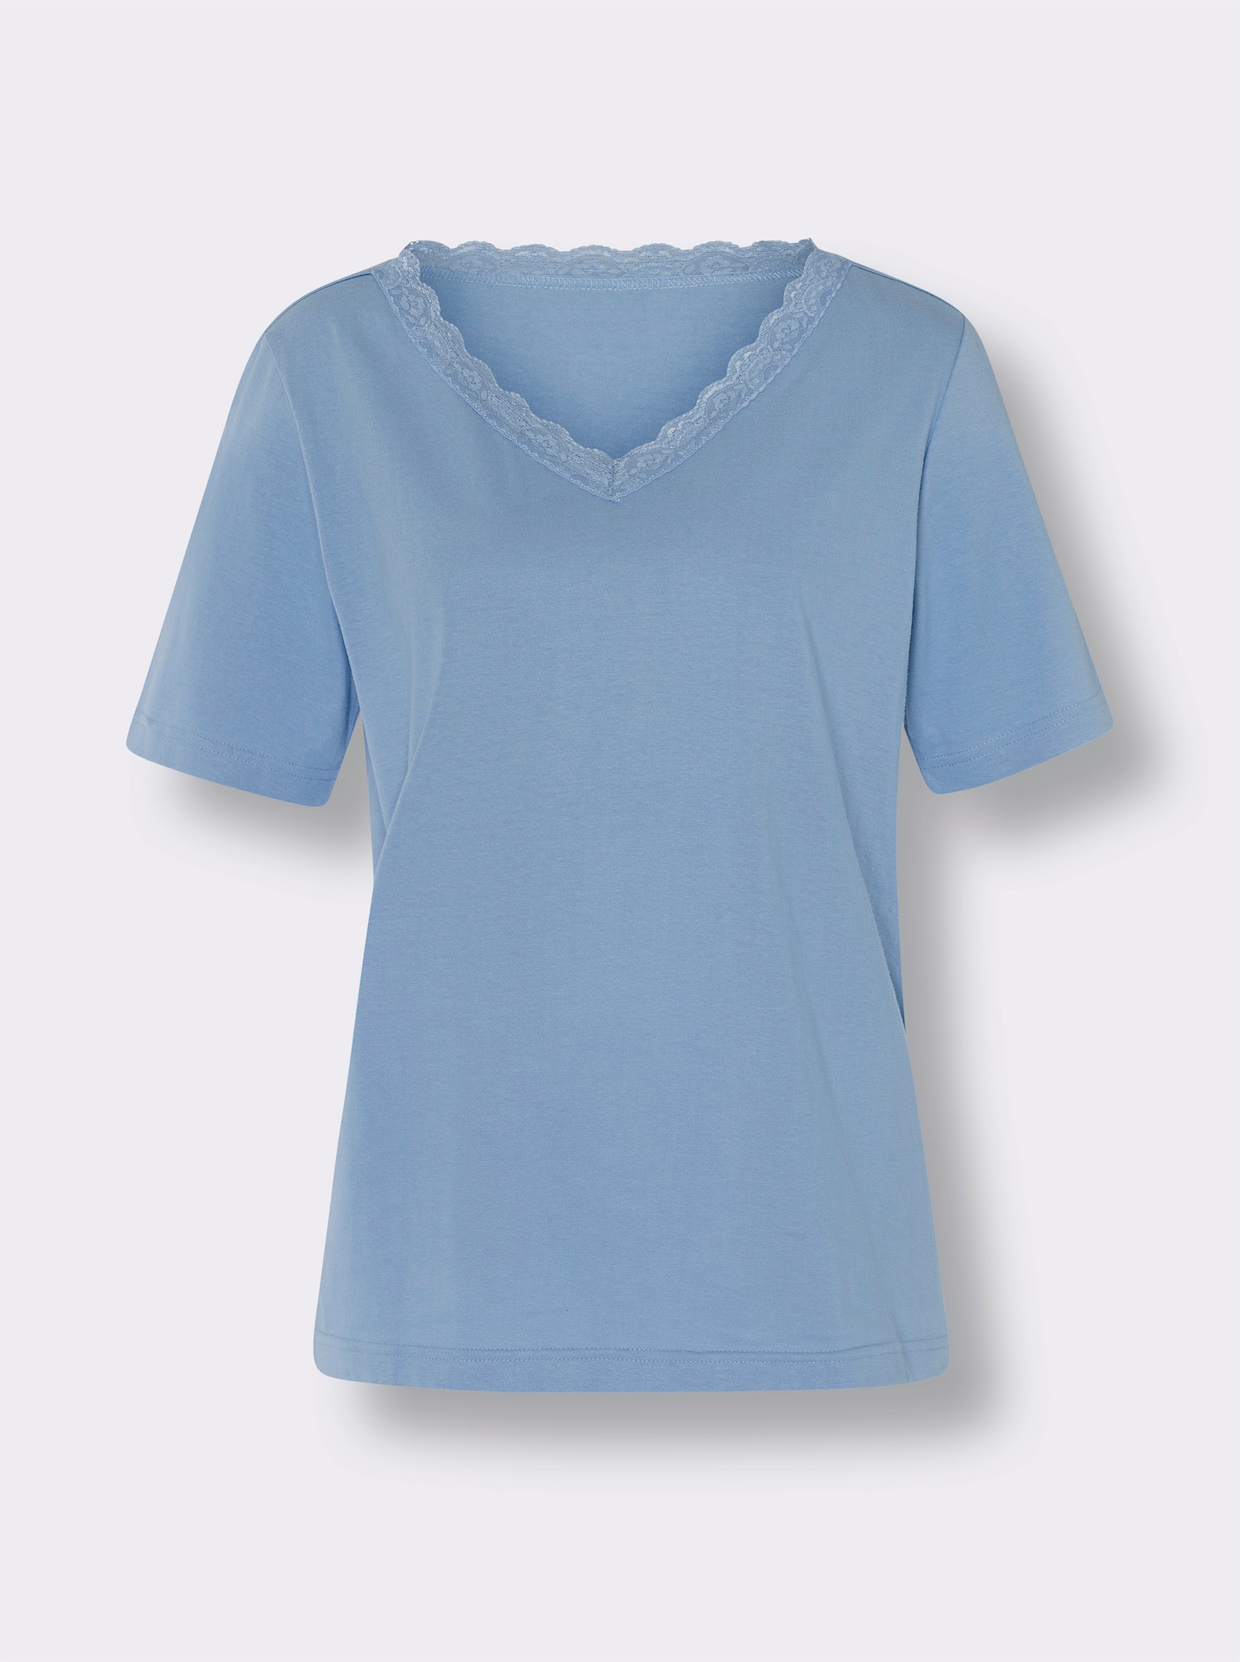 Tričko s krátkým rukávem - modrá